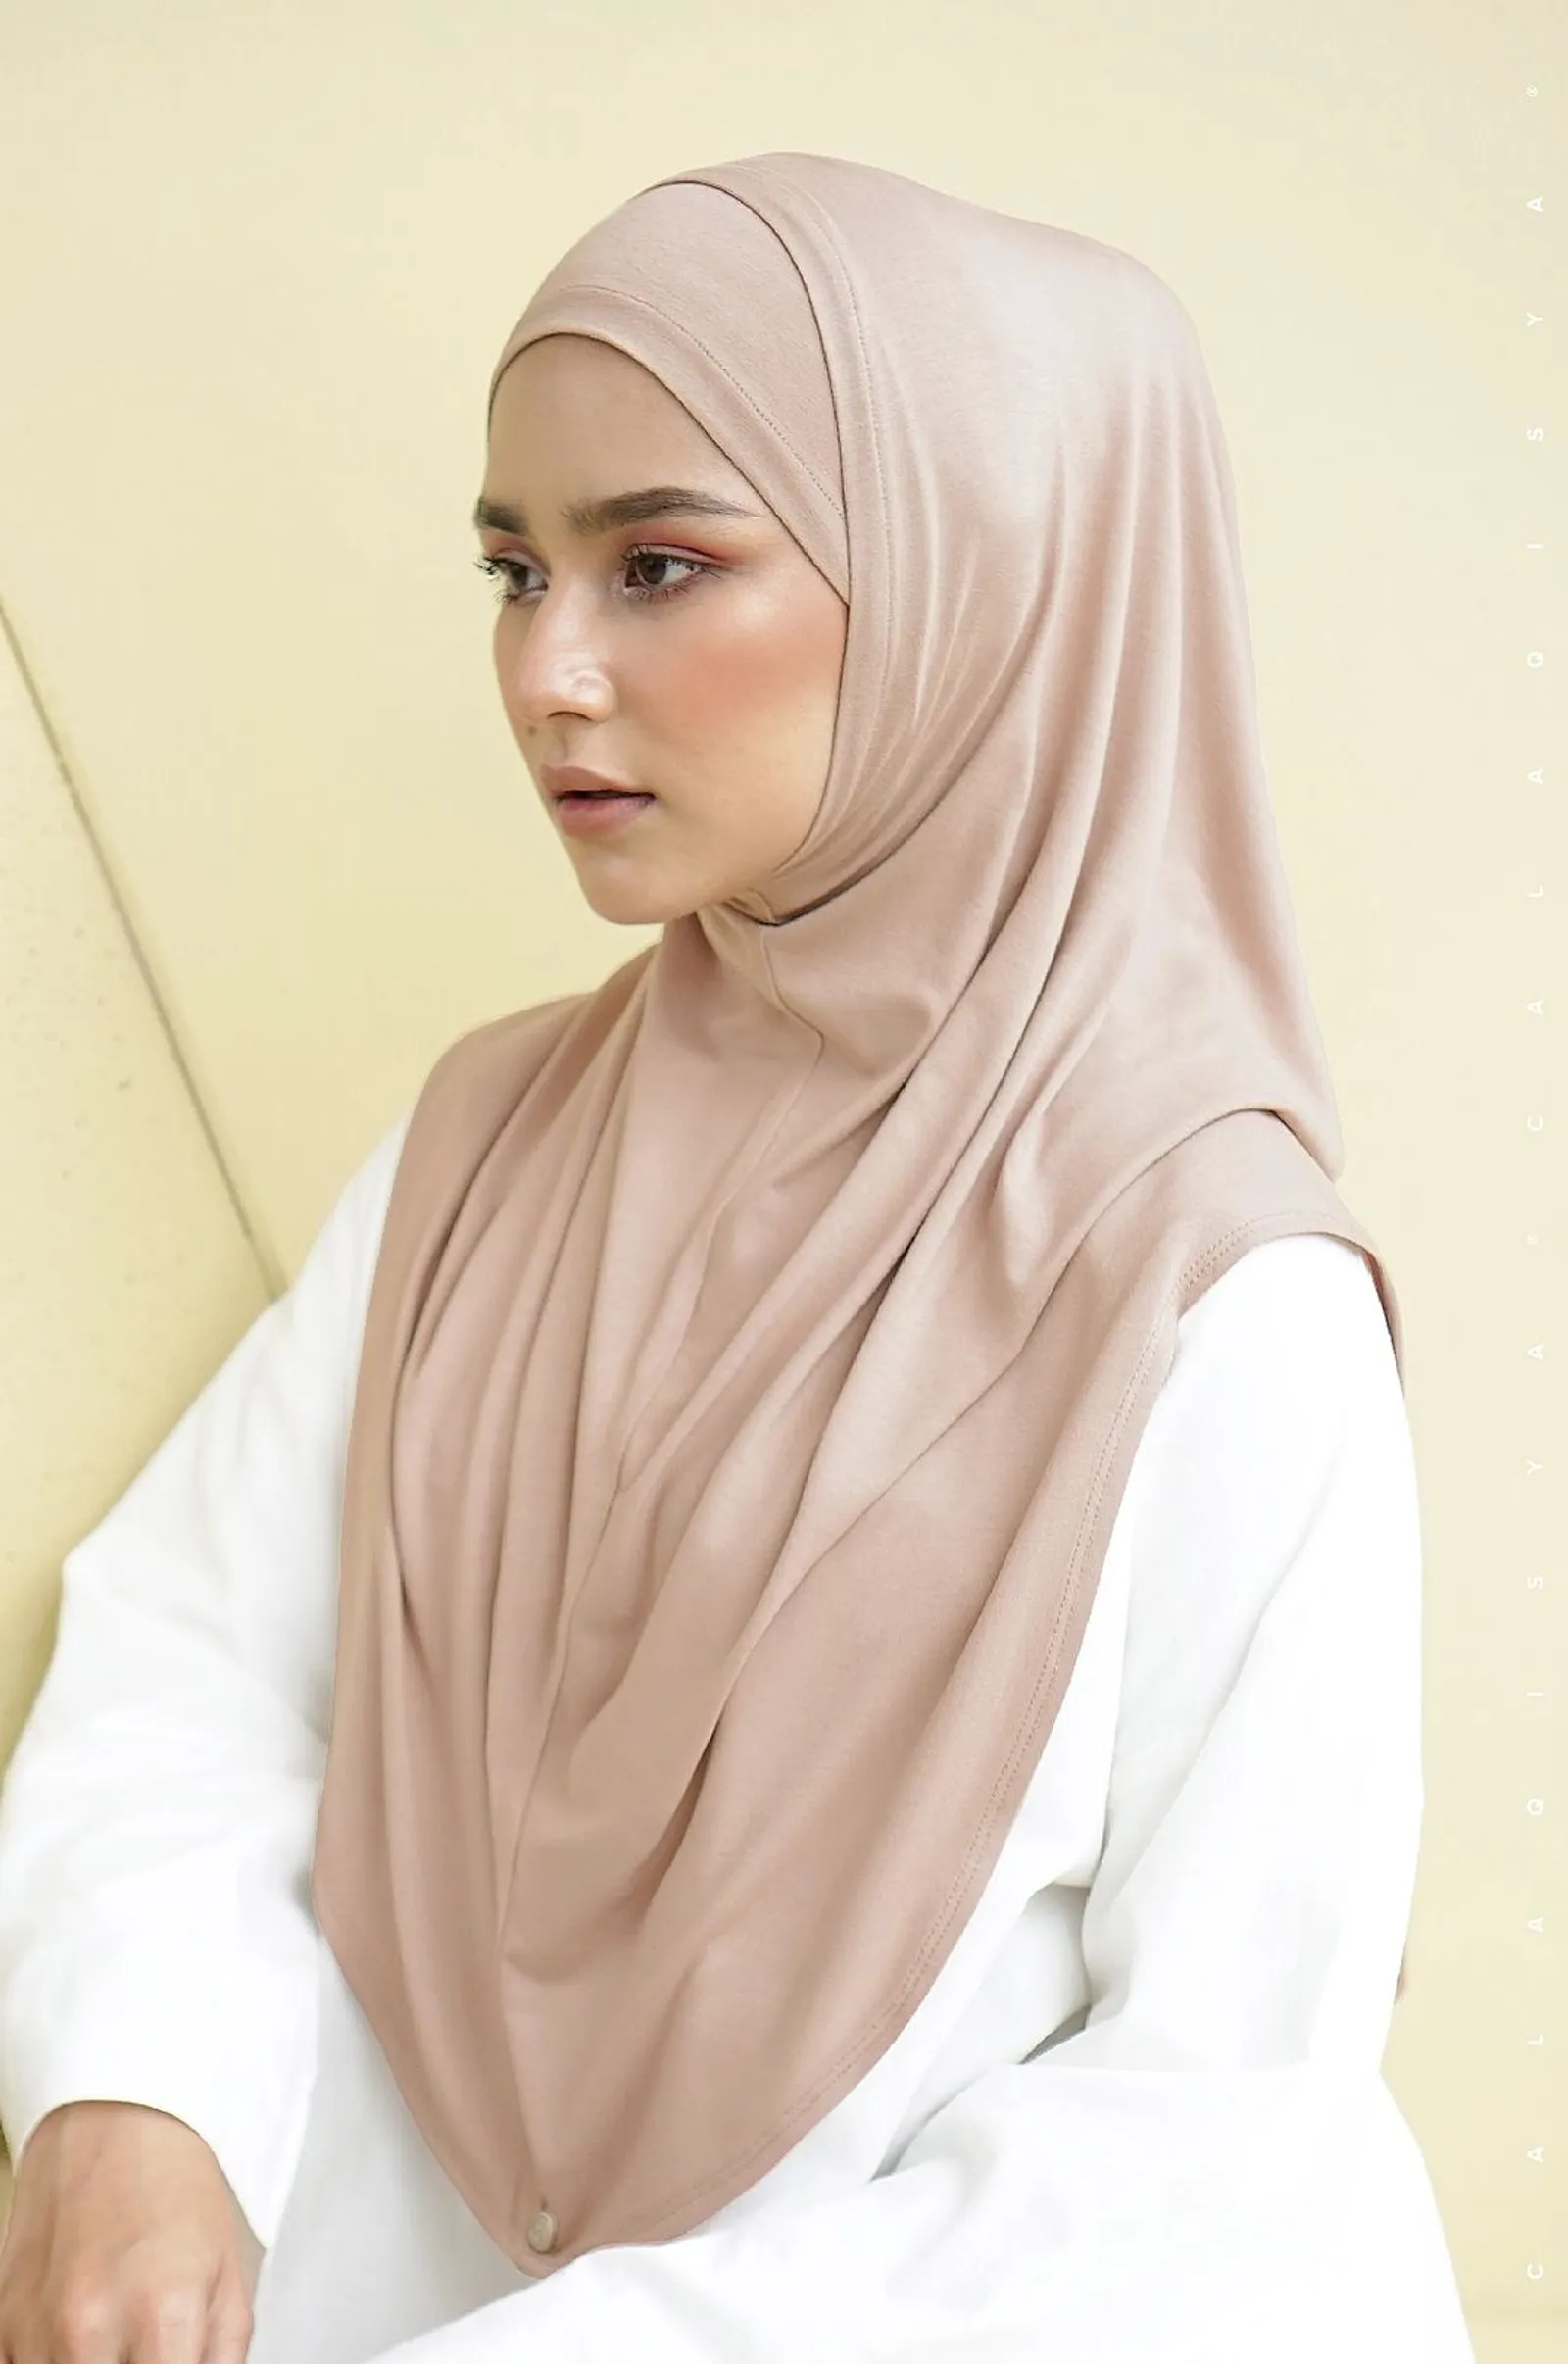 Lebih Praktis, Intip Tips Memilih Hijab Instan yang Bagus dan Nyaman